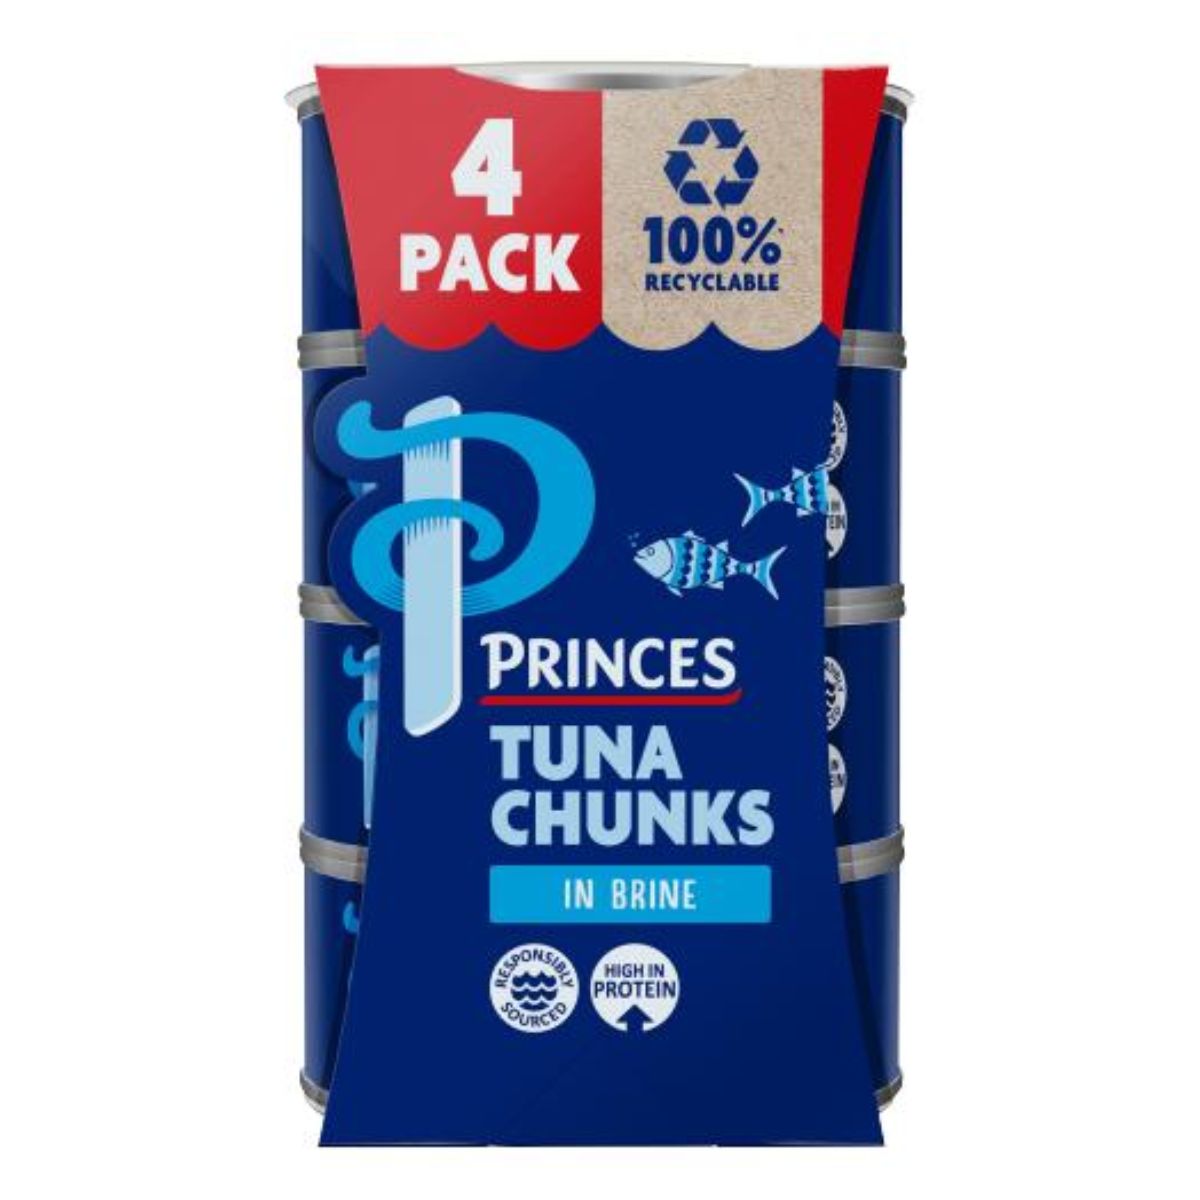 Princes - Tuna Chunks in Brine - 4 x 145g 4 pack.